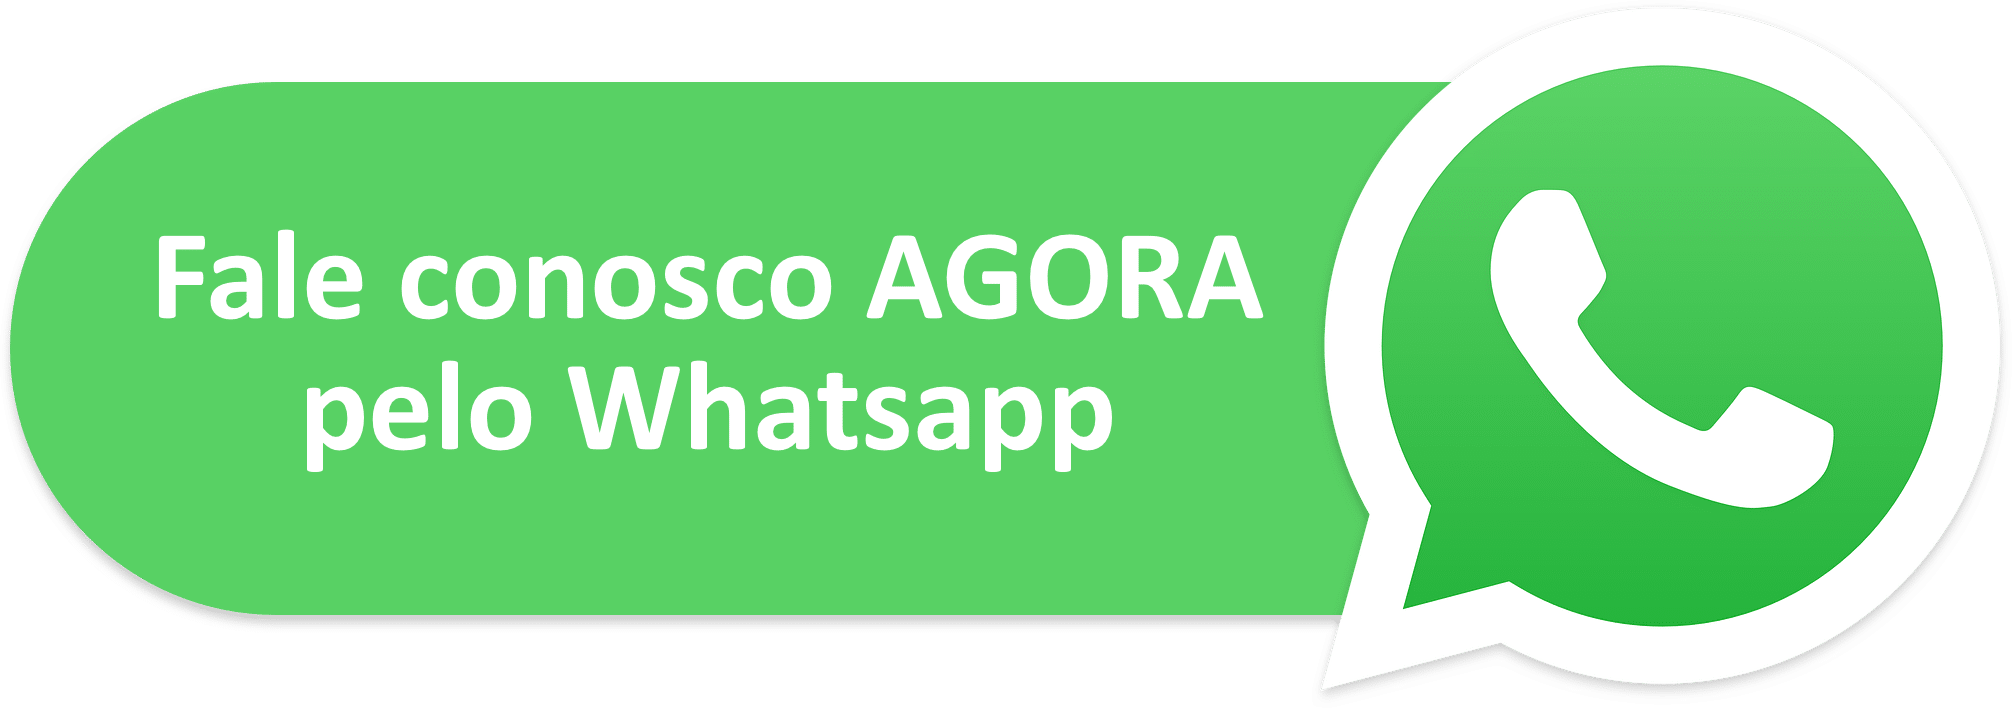 icone do WhatsApp não disponivel